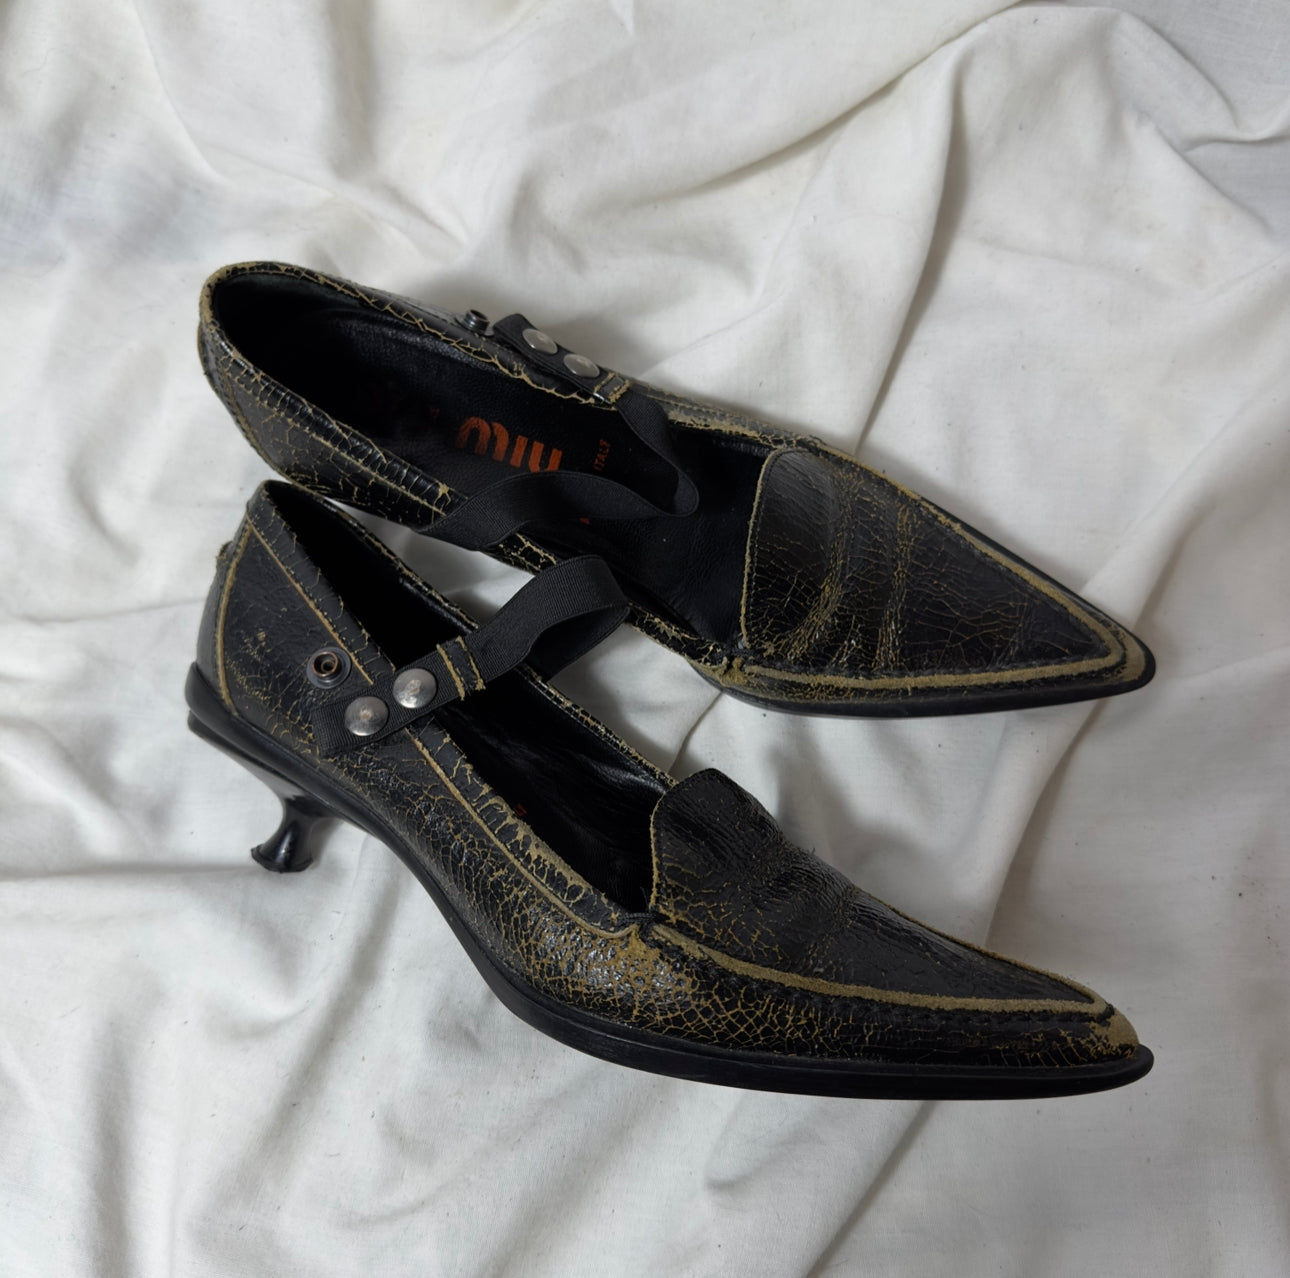 Miu Miu ‘99 distressed leather kitten heels